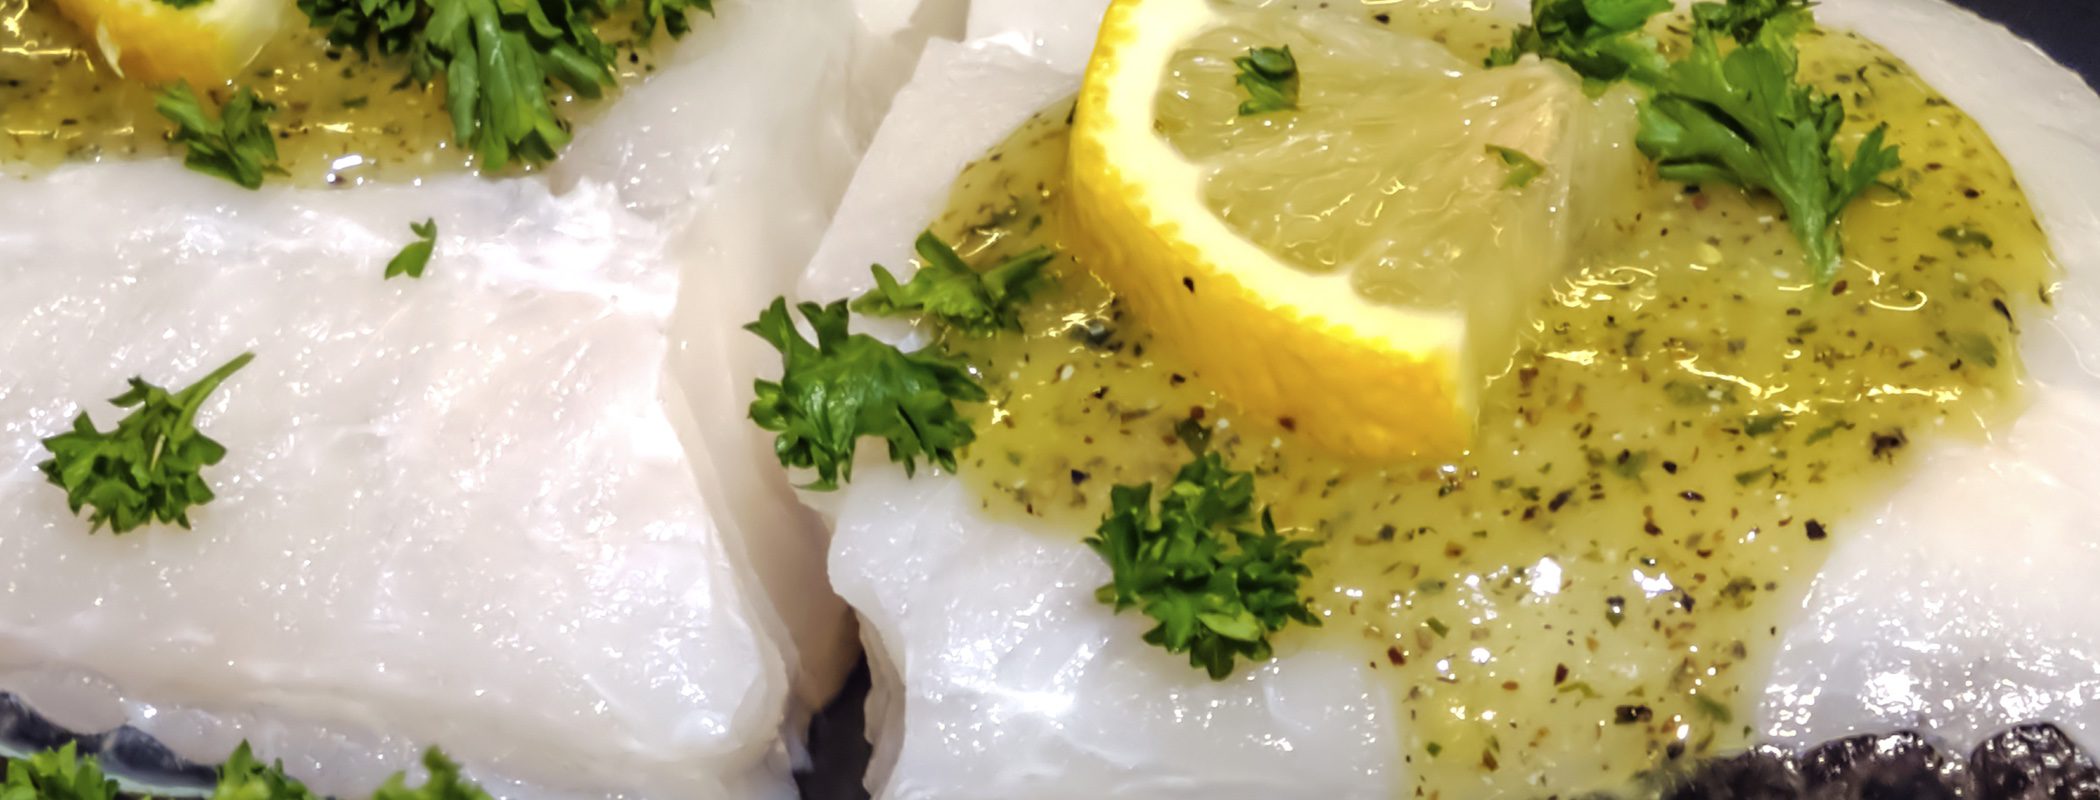 Pescados de Navidad: Bacalao al limón con aceitunas verdes y relish de cebolla